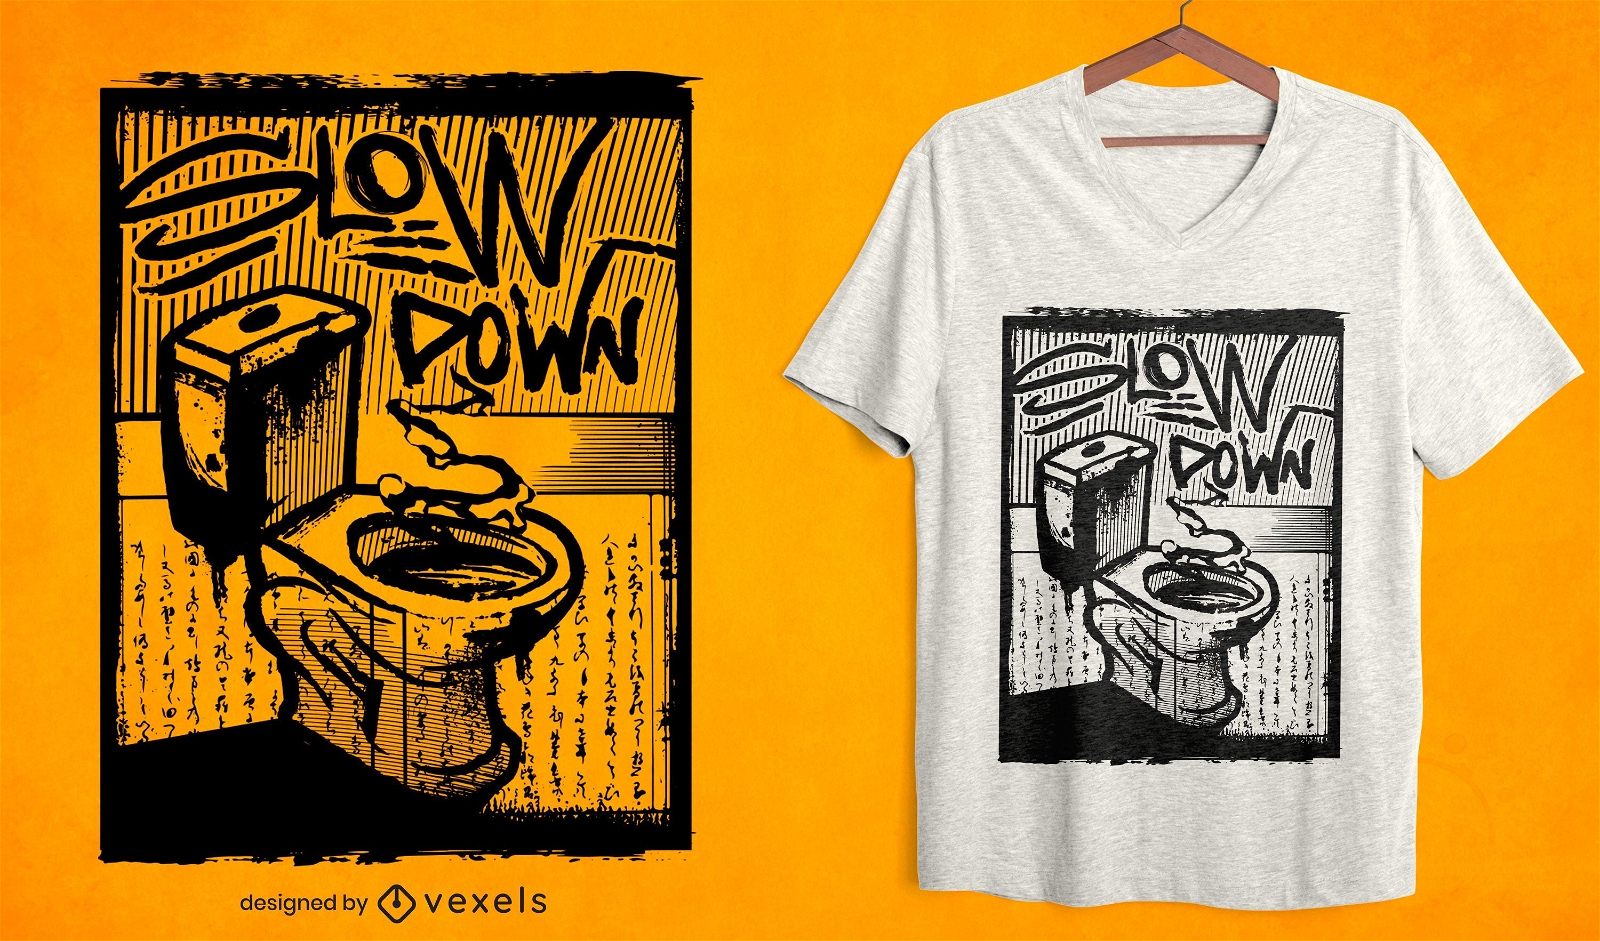 Verlangsamen Sie das T-Shirt-Design der Toilette